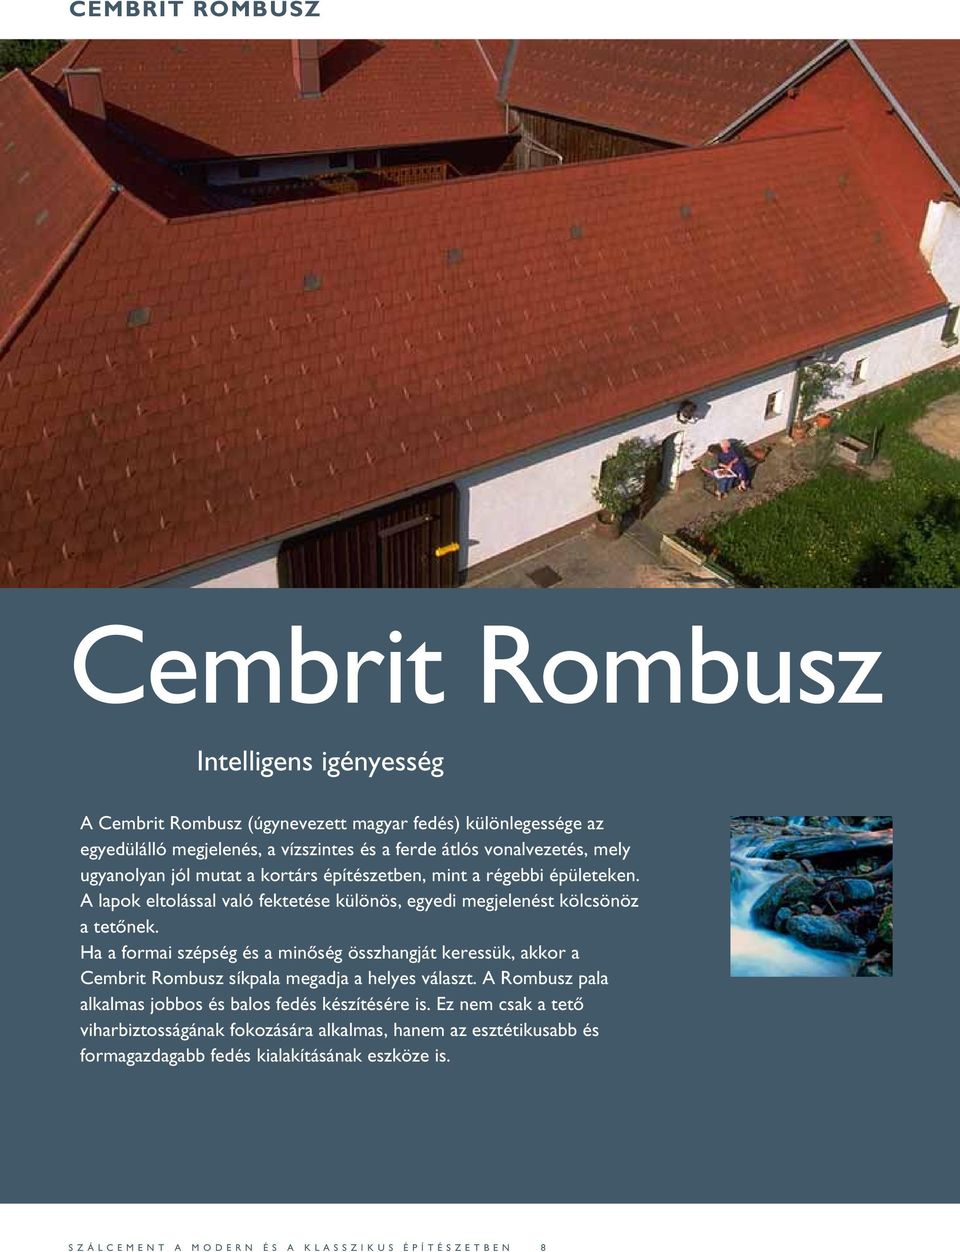 Ha a formai szépség és a minőség összhangját keressük, akkor a Cembrit Rombusz síkpala megadja a helyes választ. A Rombusz pala alkalmas jobbos és balos fedés készítésére is.